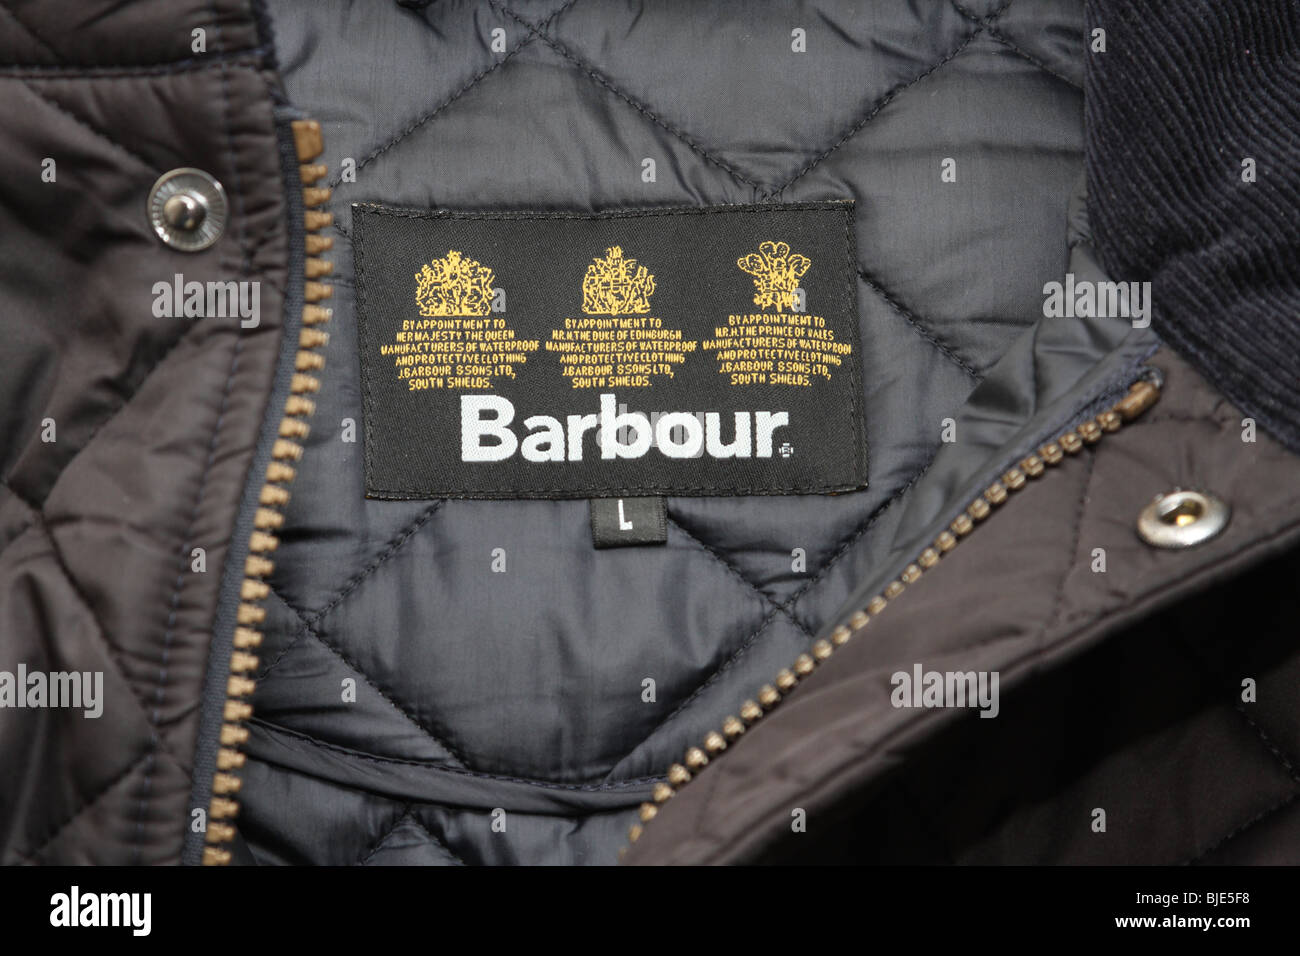 Eine Beschriftung in einem Barbour Mantel Stockfotografie - Alamy